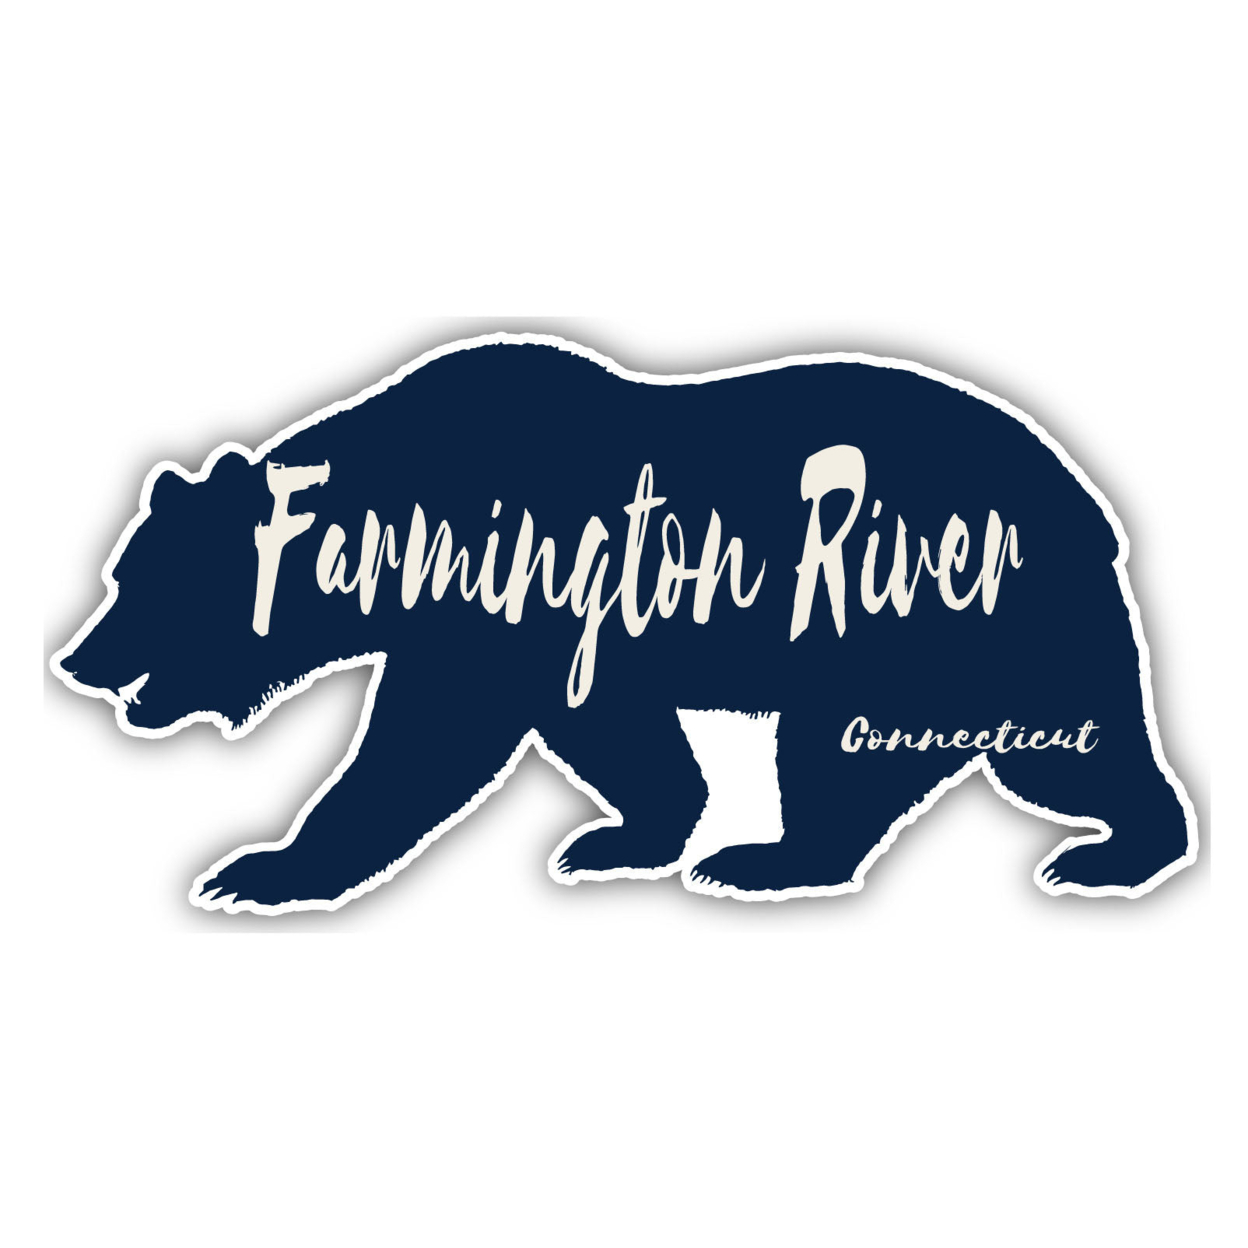 Farmington River Connecticut Souvenir Decorative Stickers (Choose Theme And Size) - Single Unit, 6-Inch, Great Outdoors